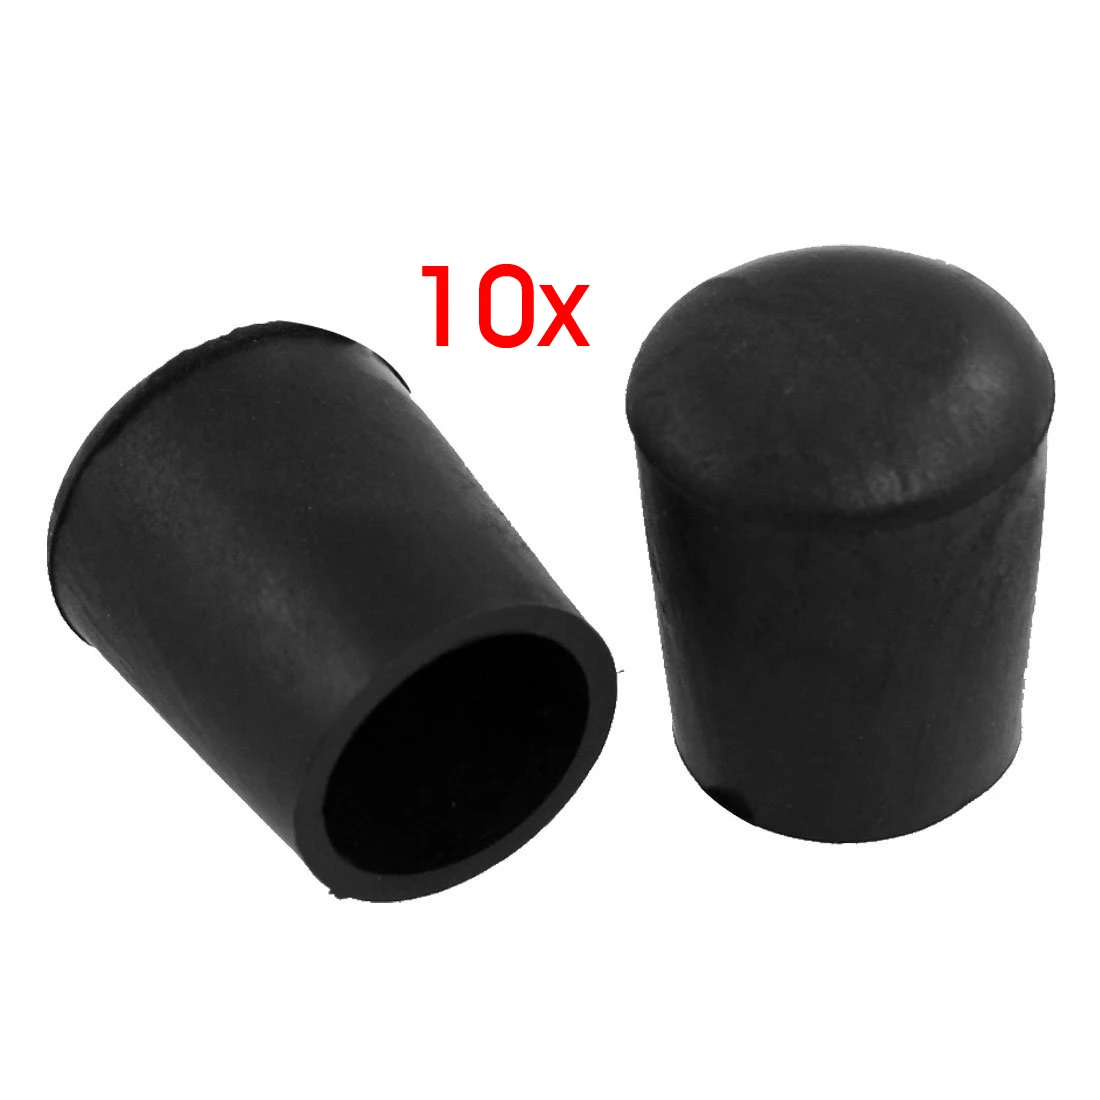 Бутик 10 шт для мебели, стульев и столов ногу 18 мм резиновая покрытия для ног протекторы